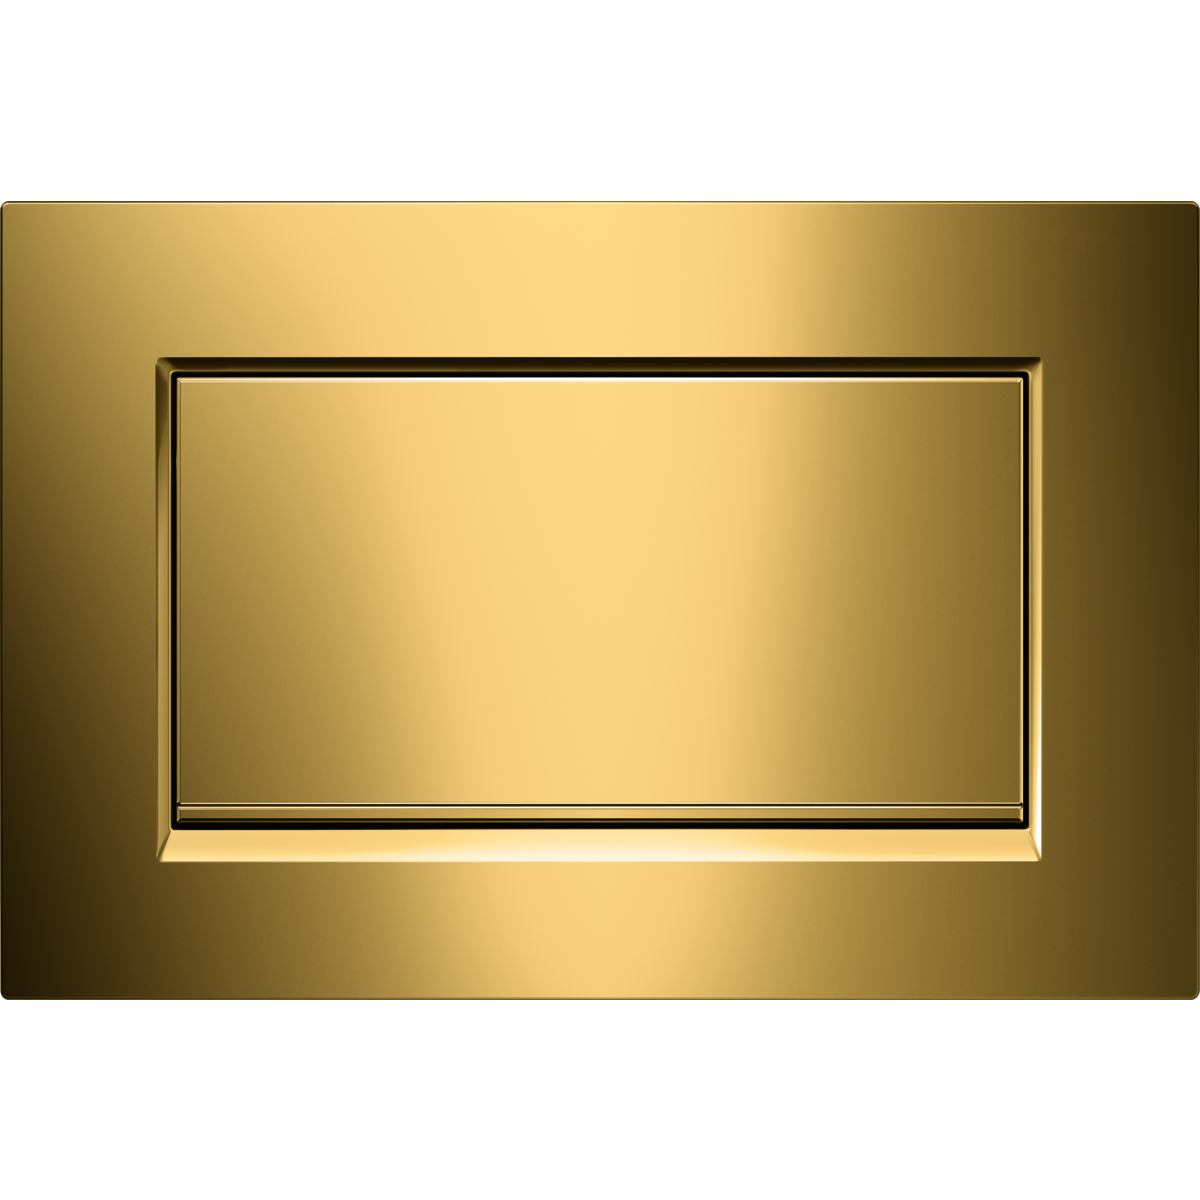 Kumanda Kapağı Sigma30 - Tek Basmalı-Altın 